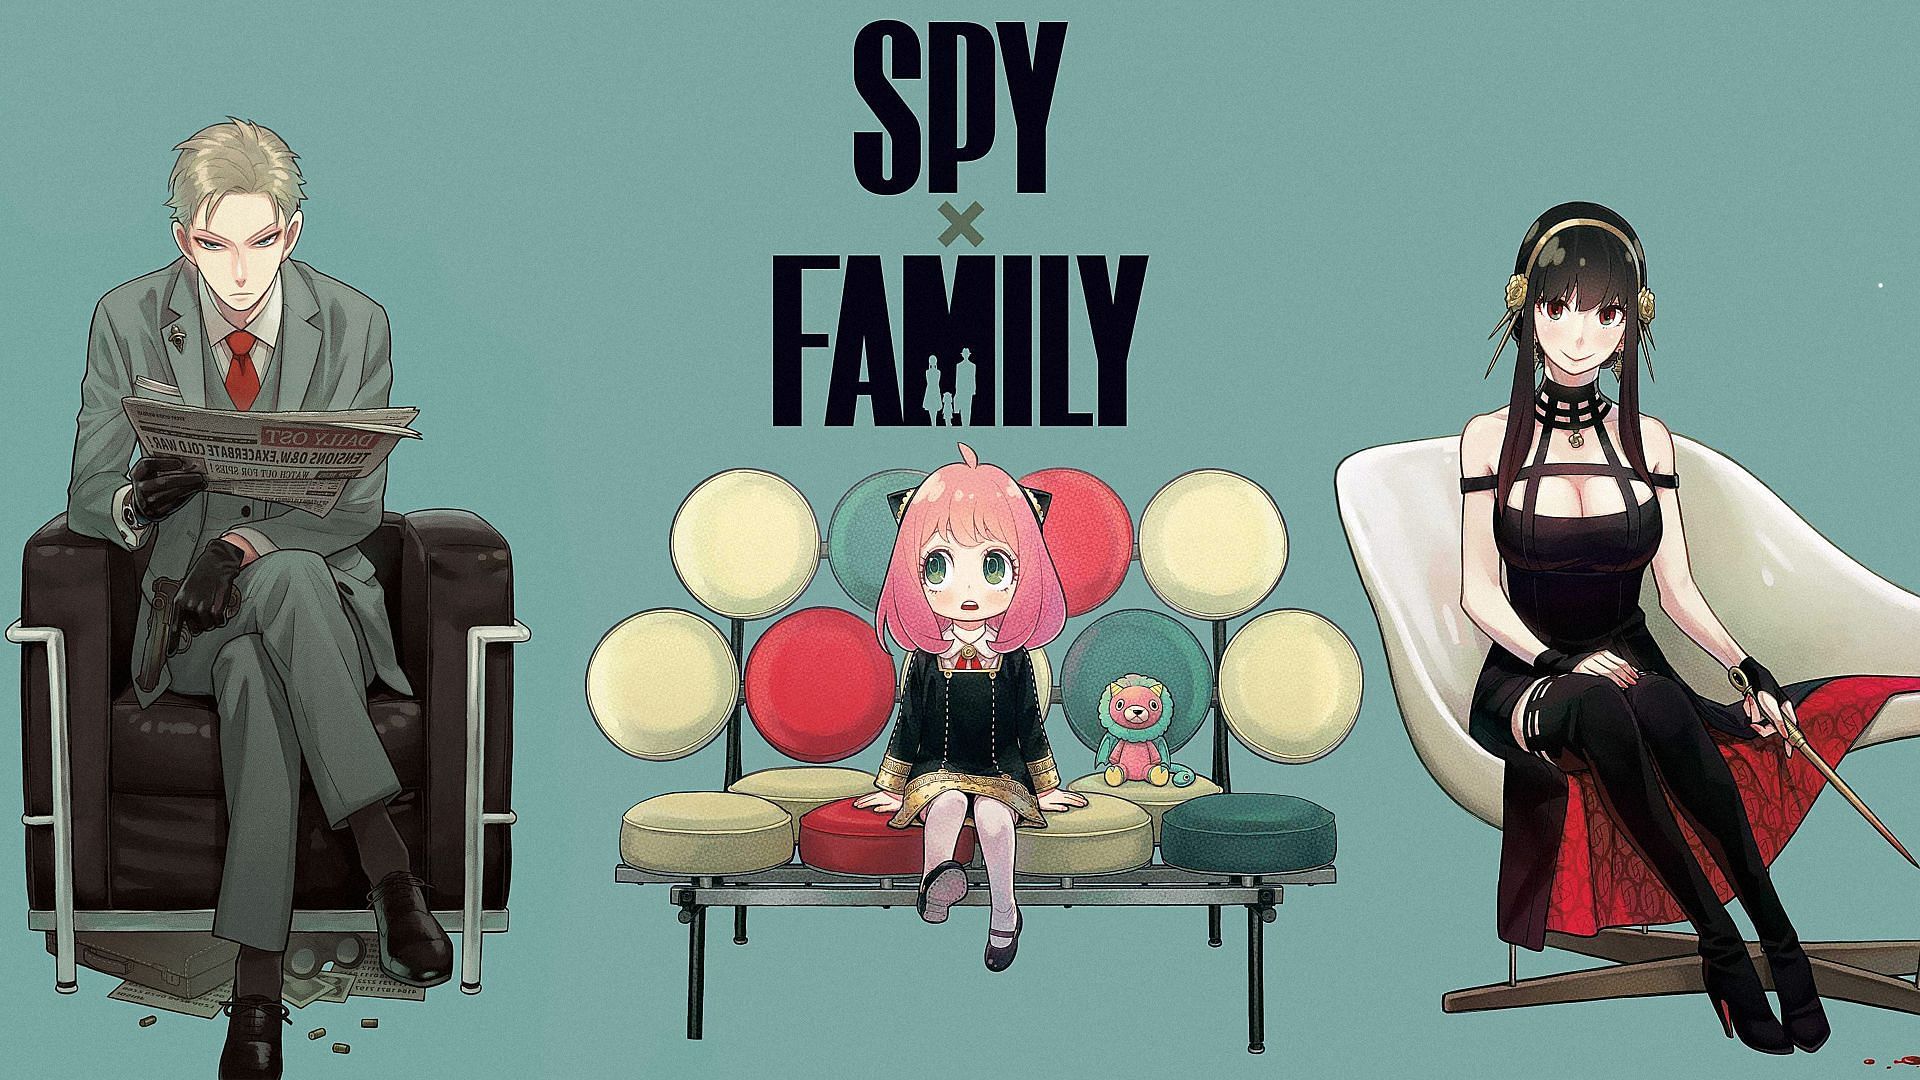 SPY x FAMILY anime  Spy x Family Wiki  Fandom